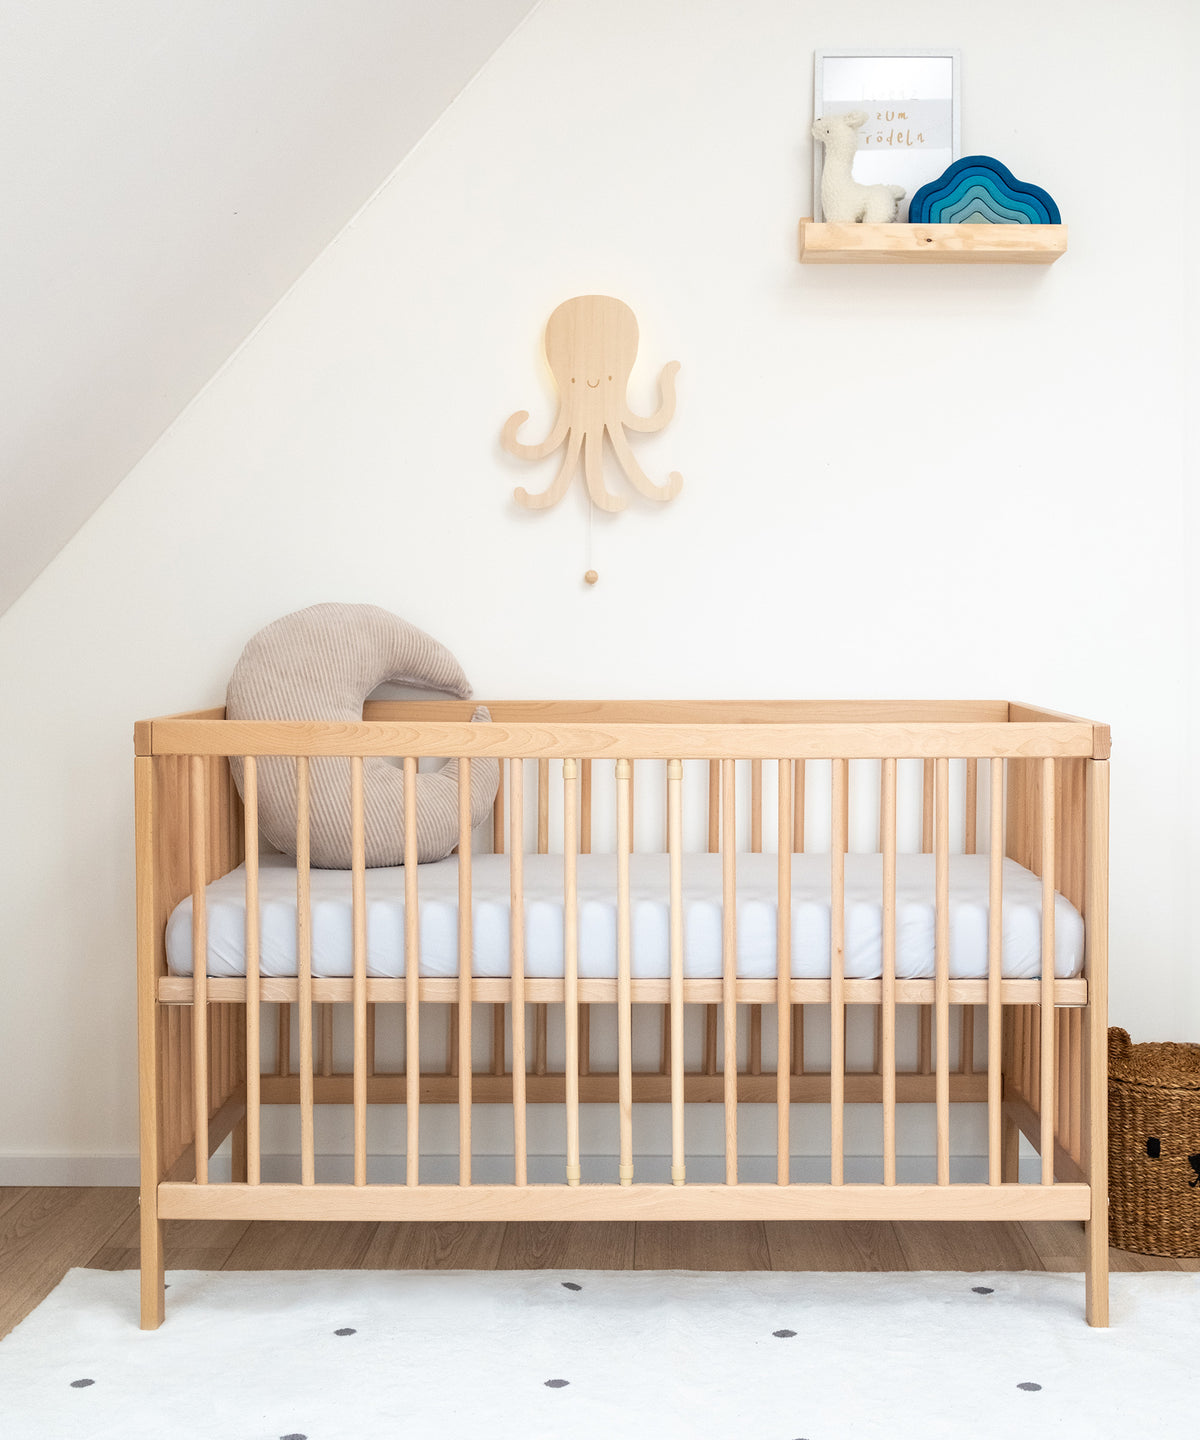 Babybett Natur mit hoch gestellter Liegefläche in Kinderzimmer.